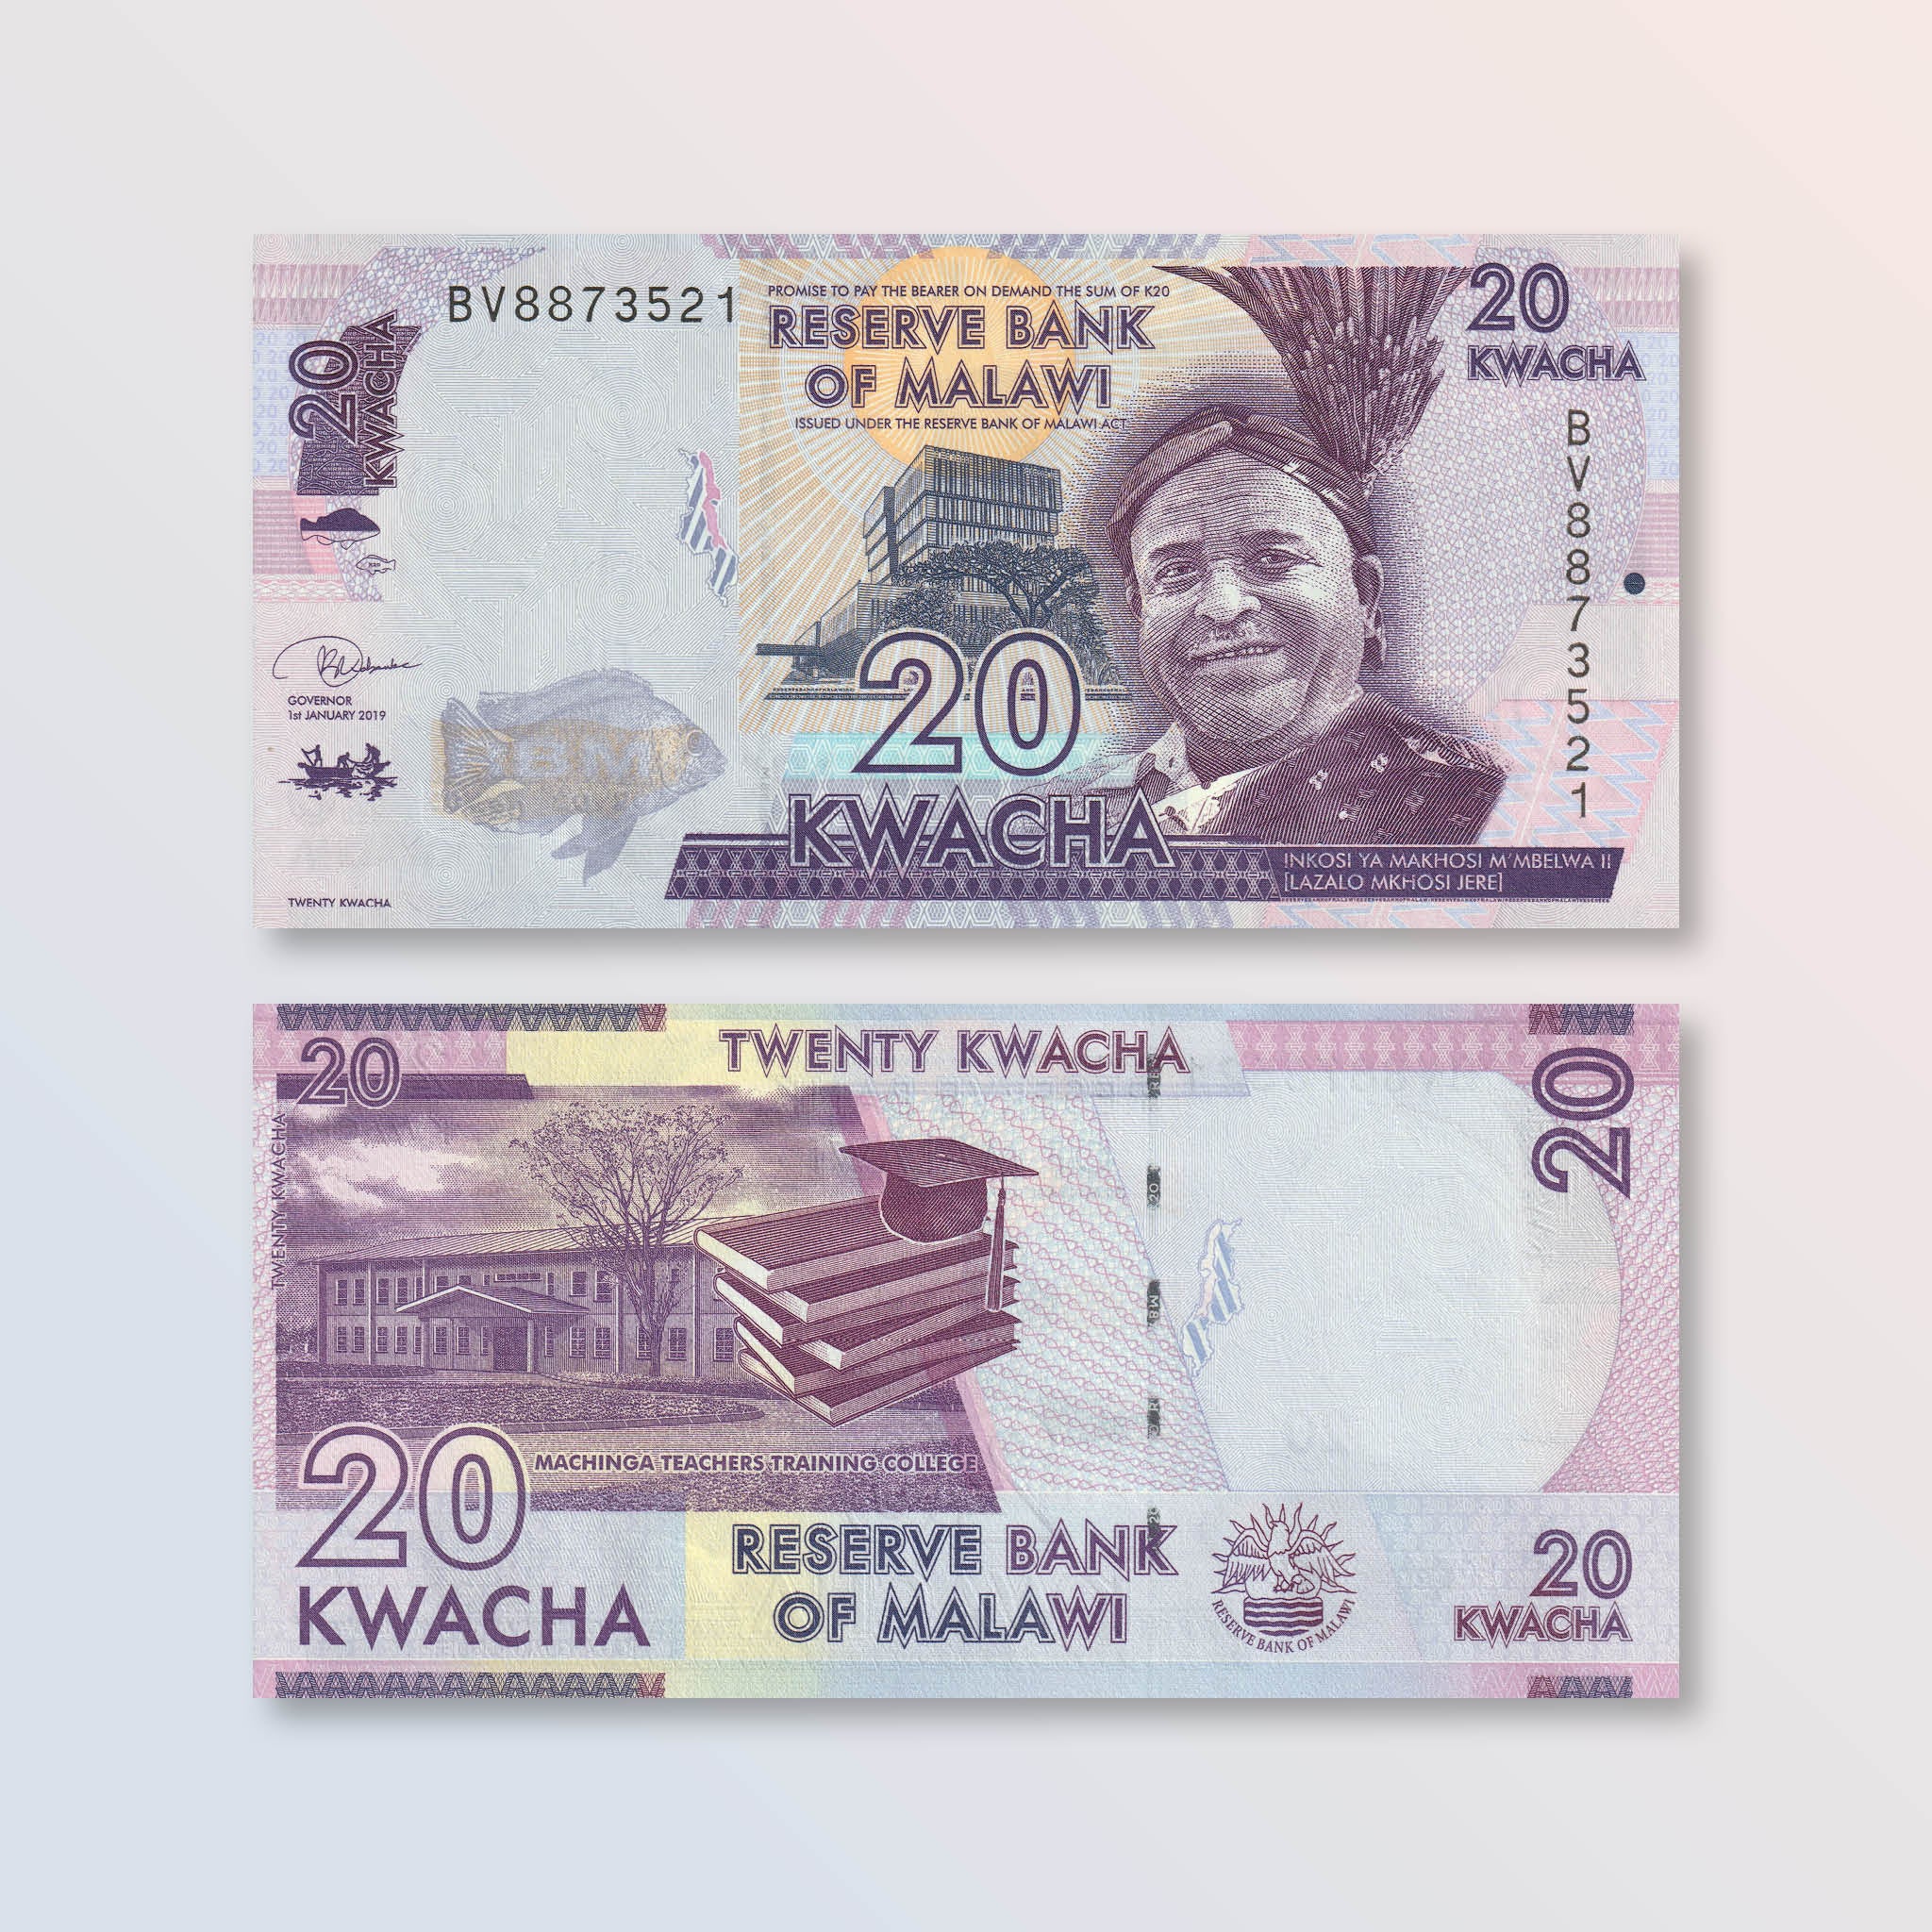 Malawi 20 Kwacha, 2019, B157e, P63, UNC - Robert's World Money - World Banknotes